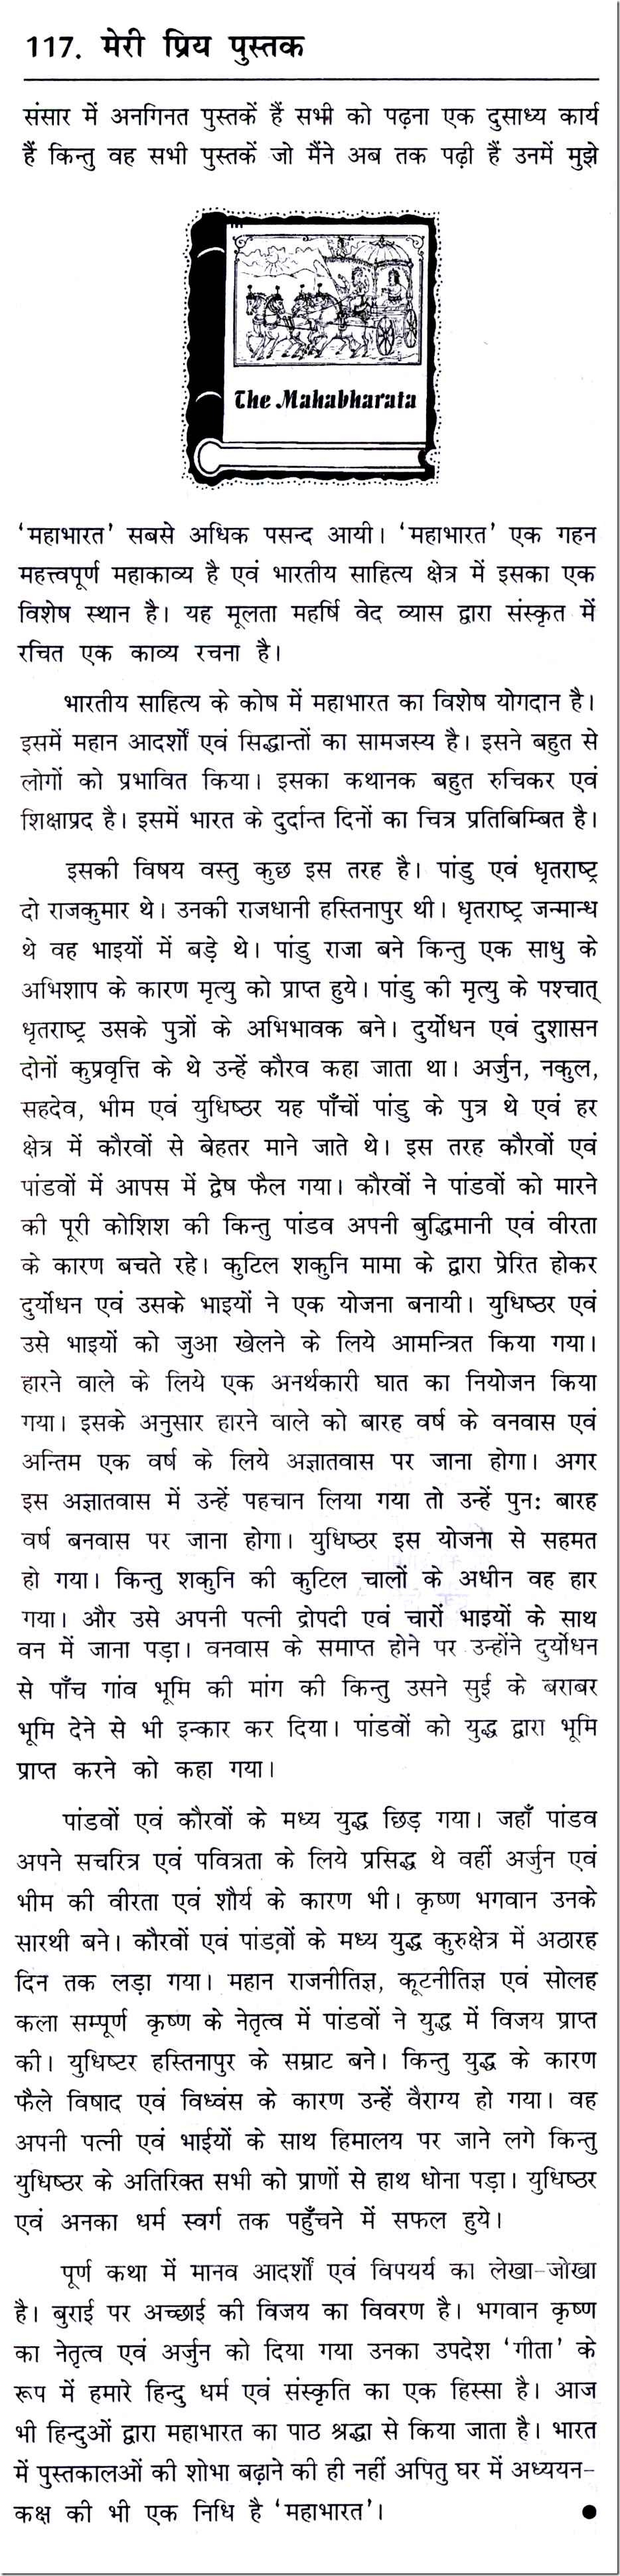 mahabharata summary in hindi